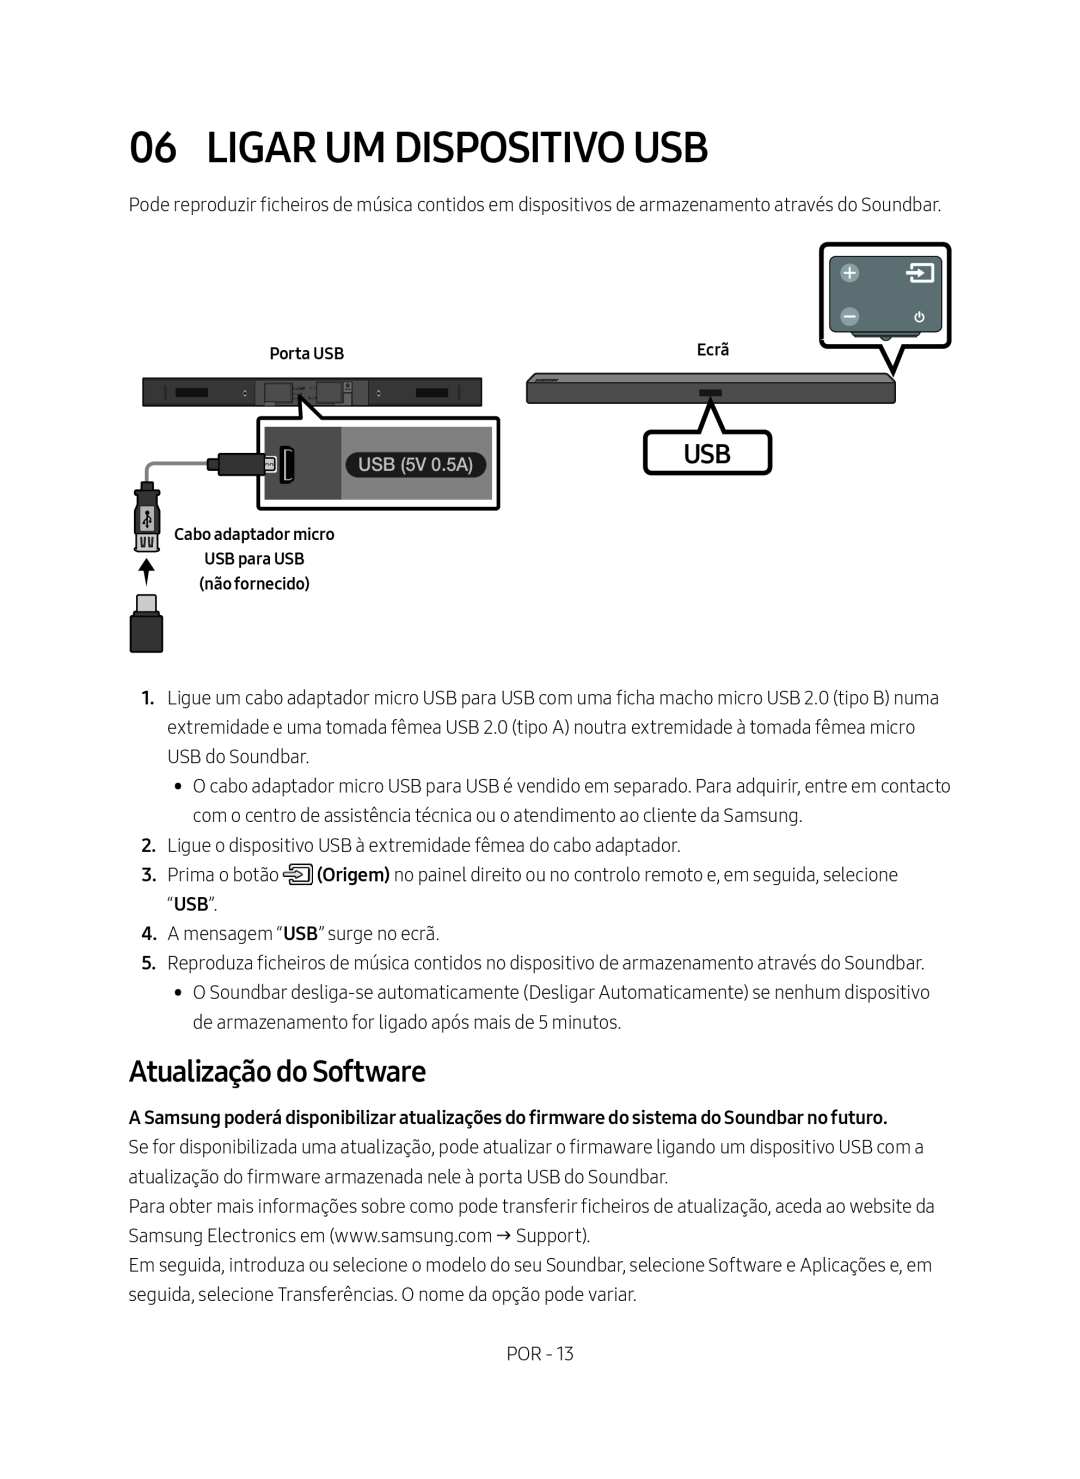 Samsung HW-M450/ZF, HW-M450/EN, HW-M450/ZG manual Ligar Um Dispositivo Usb, Atualização do Software, USB 5V 0.5A 